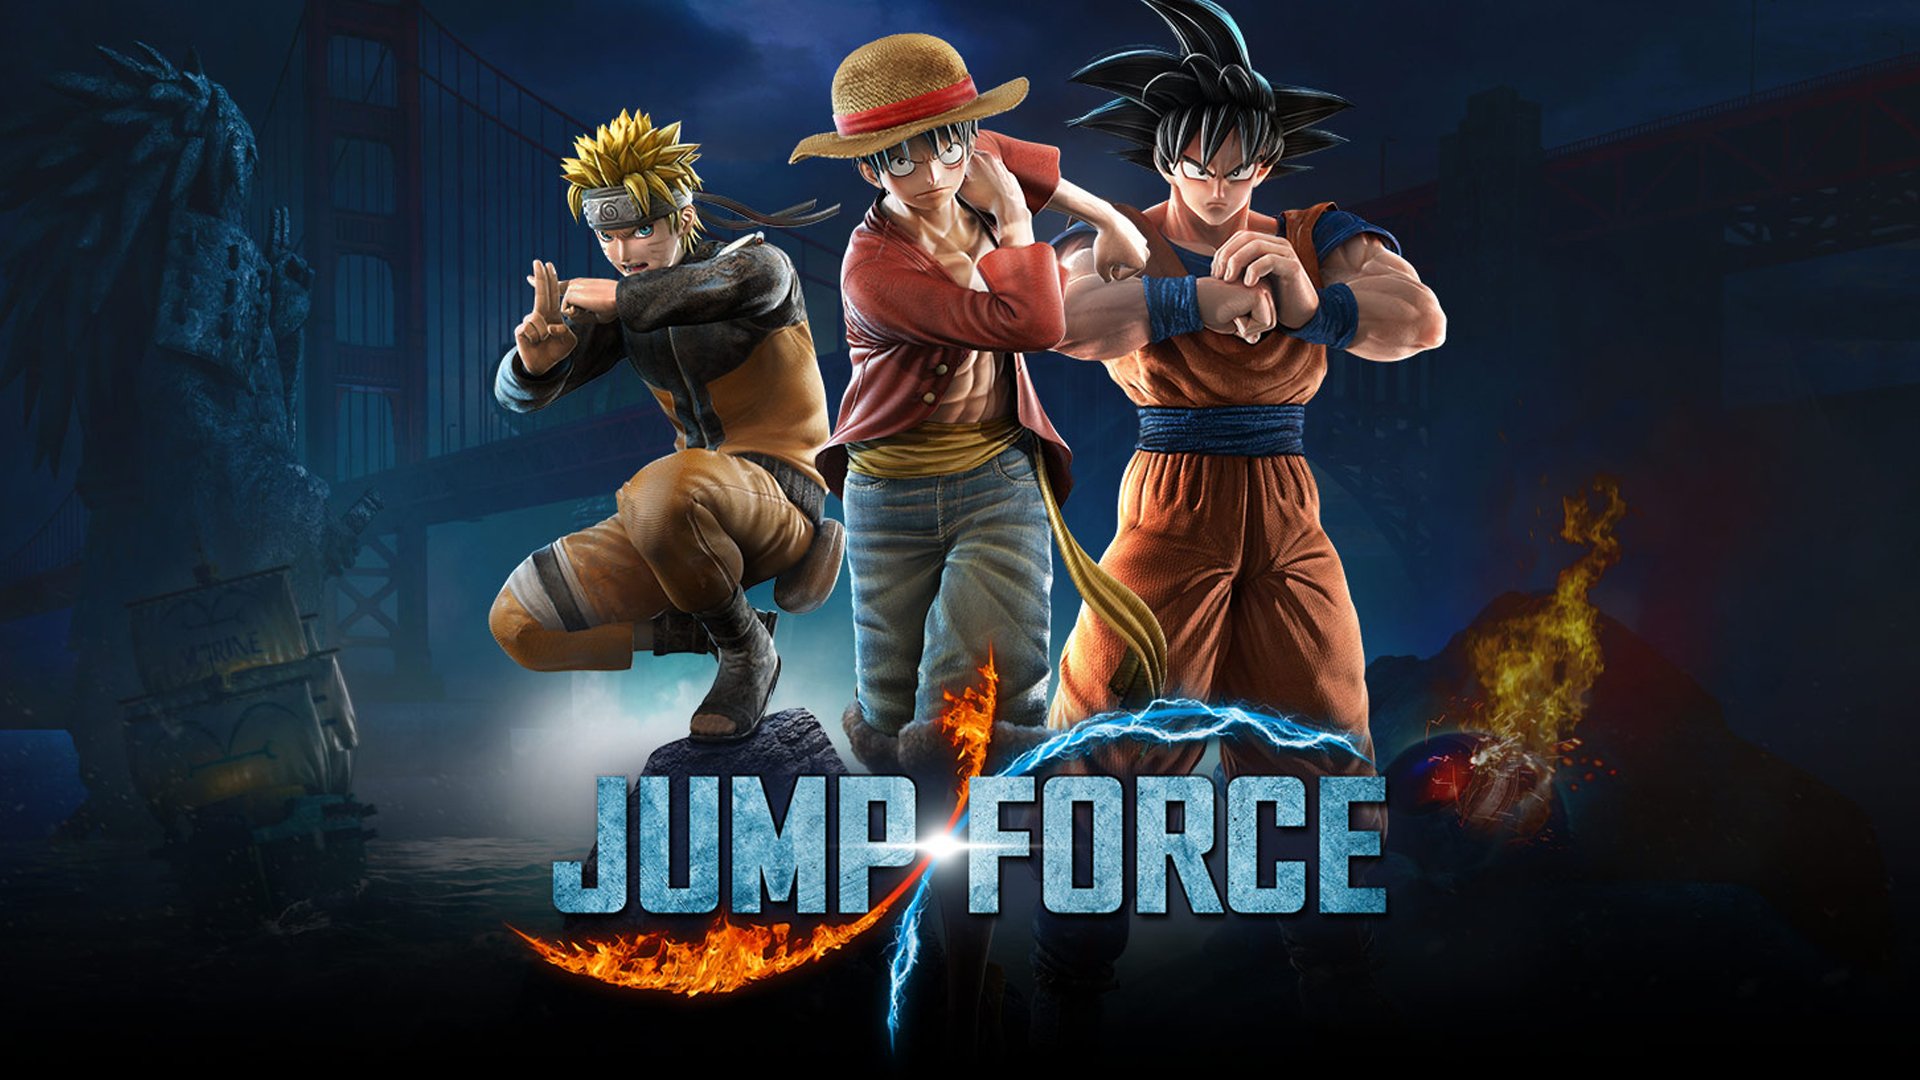  Jump Force เตรียมยุติการขายบนทุกแพลตฟอร์มในวันที่ 7 ก.พ. 2022 และปิดให้บริการเซิร์ฟเวอร์ออนไลน์ ในวันที่ 24 ส.ค. 2022